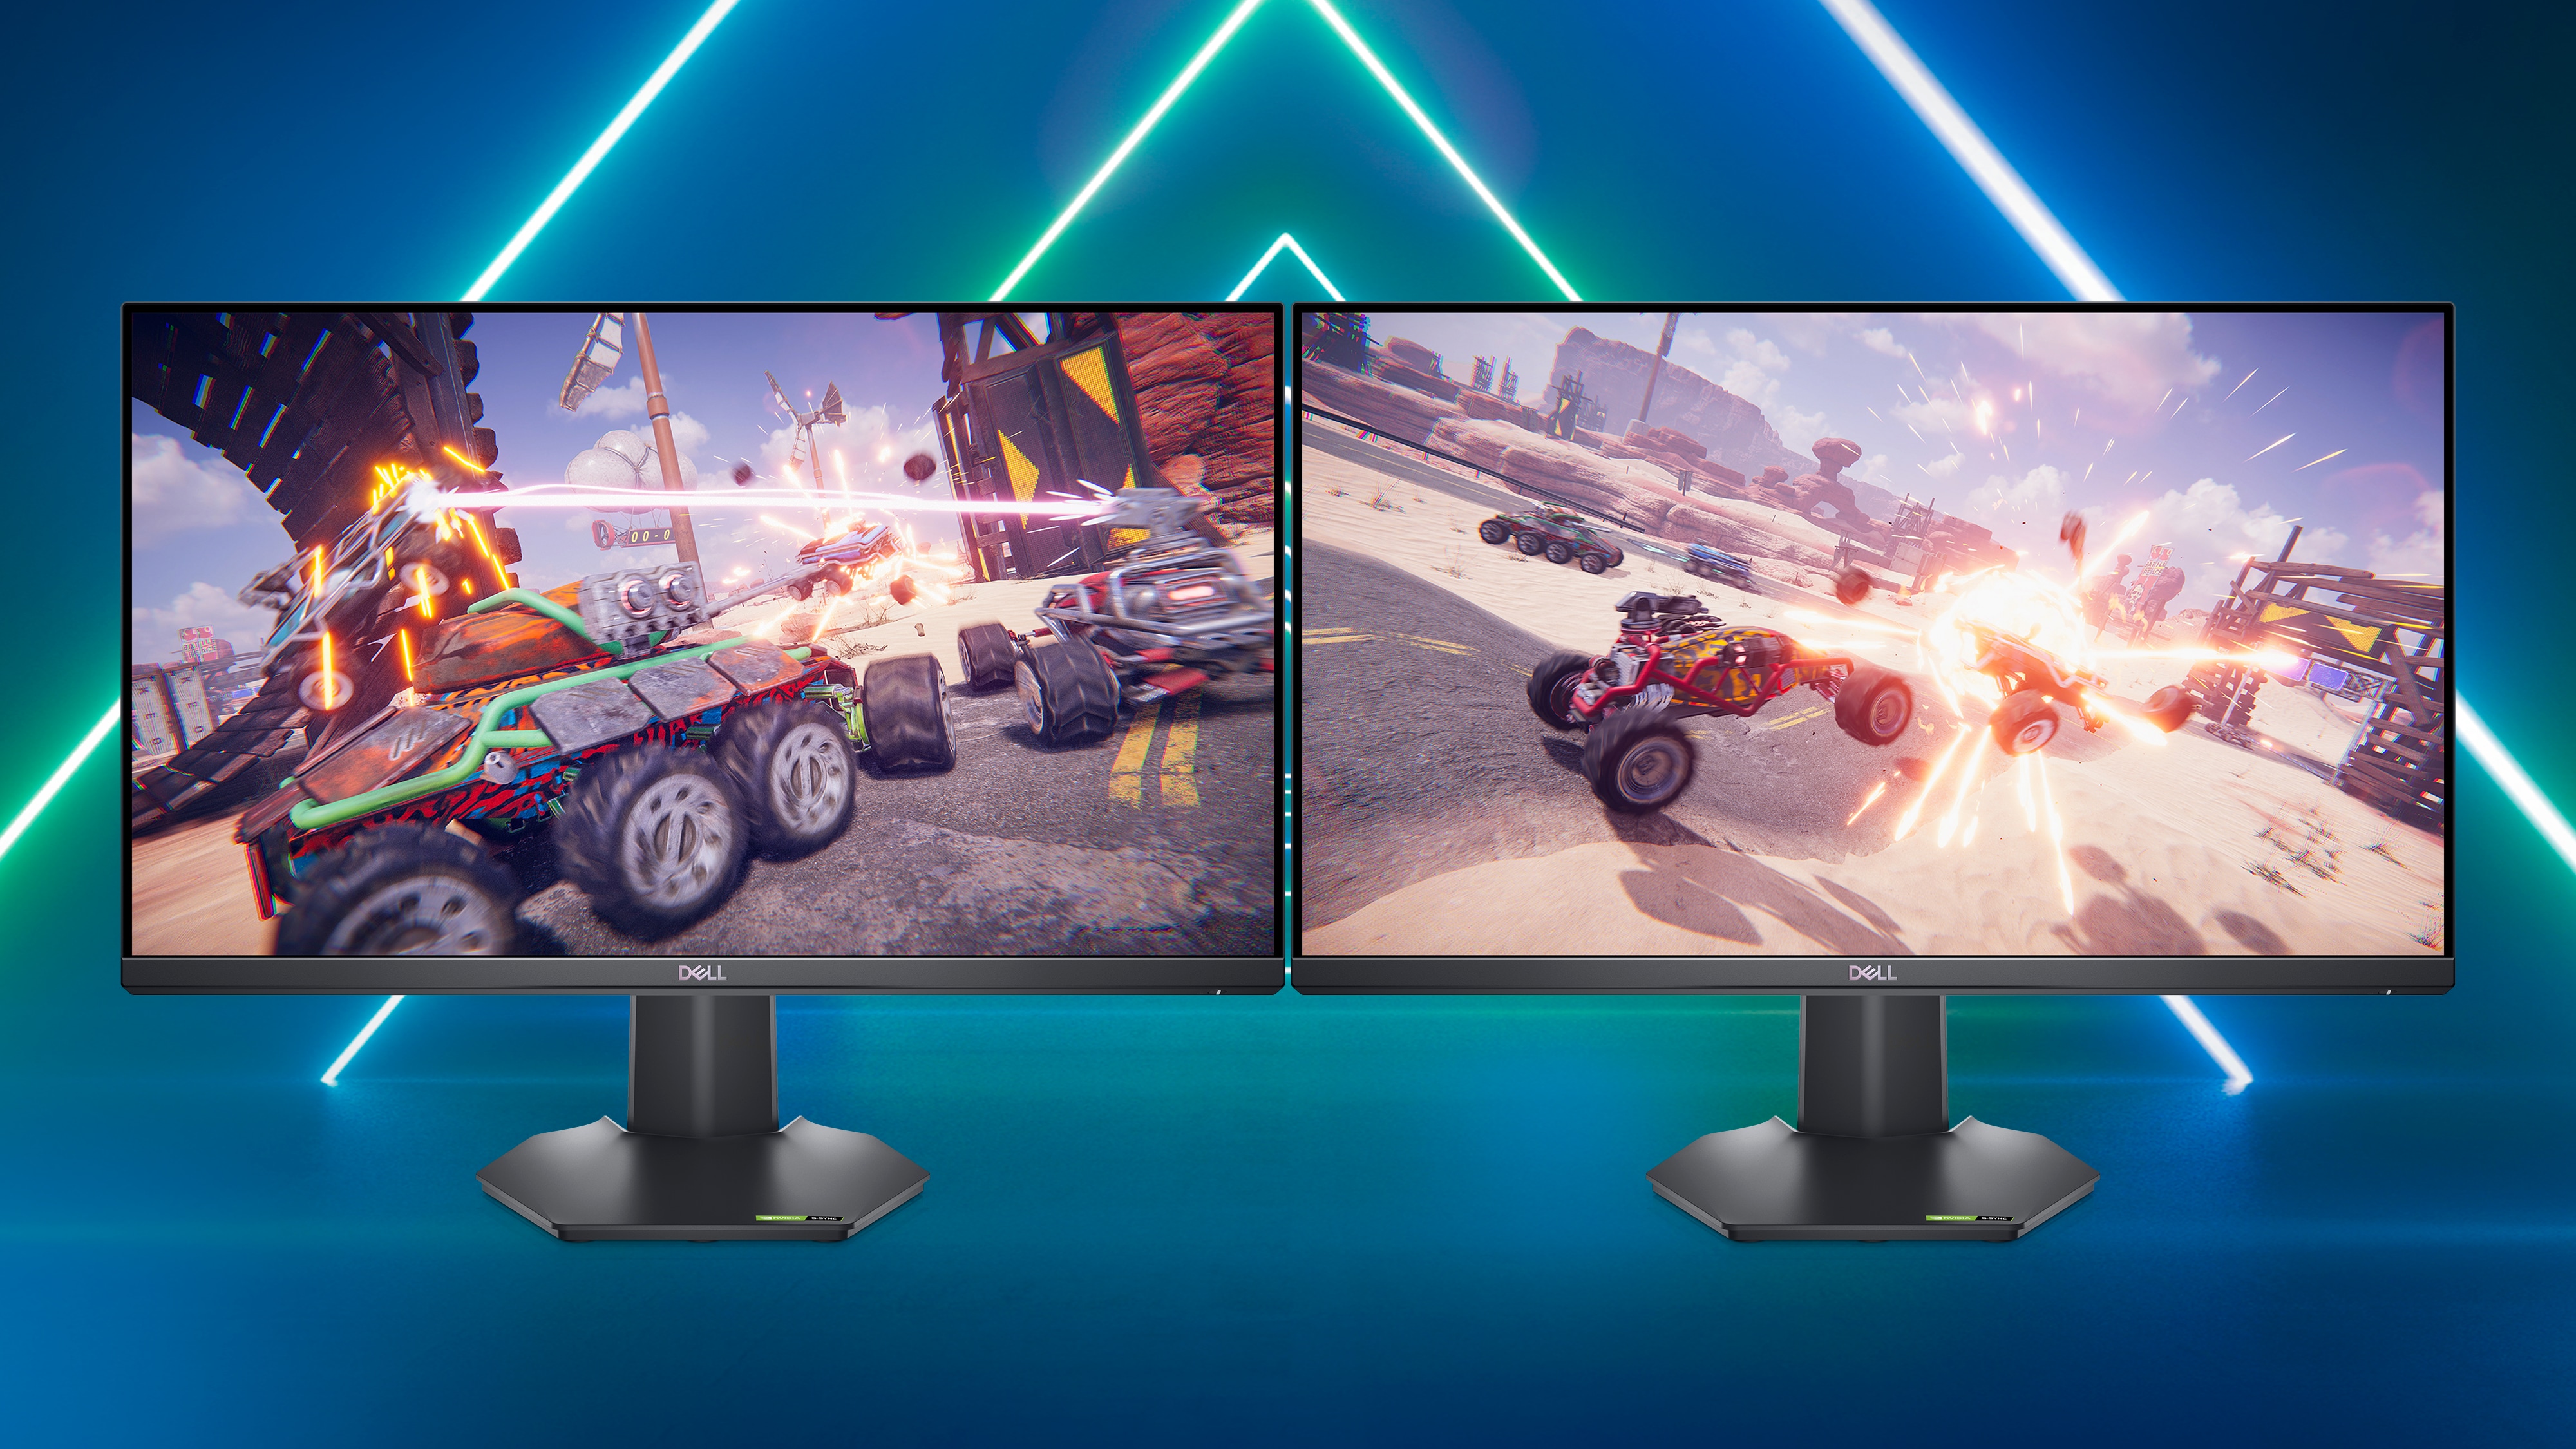 Image de deux écrans de gaming Dell G2422HS sur un arrière-plan bleu éclatant et une image de jeu sur les deux écrans.